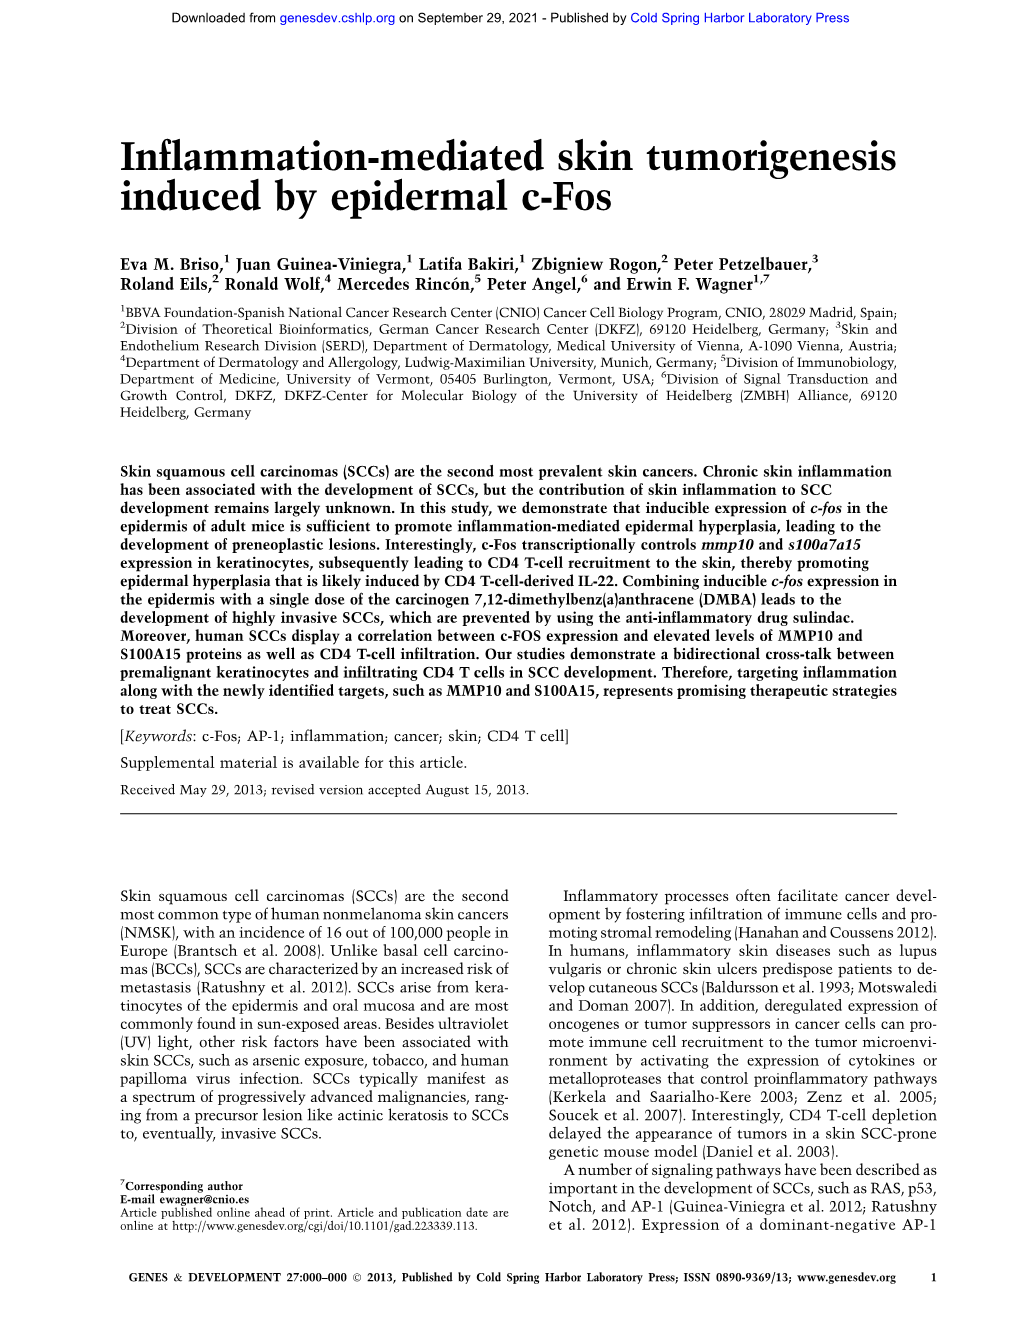 Inflammation-Mediated Skin Tumorigenesis Induced by Epidermal C-Fos